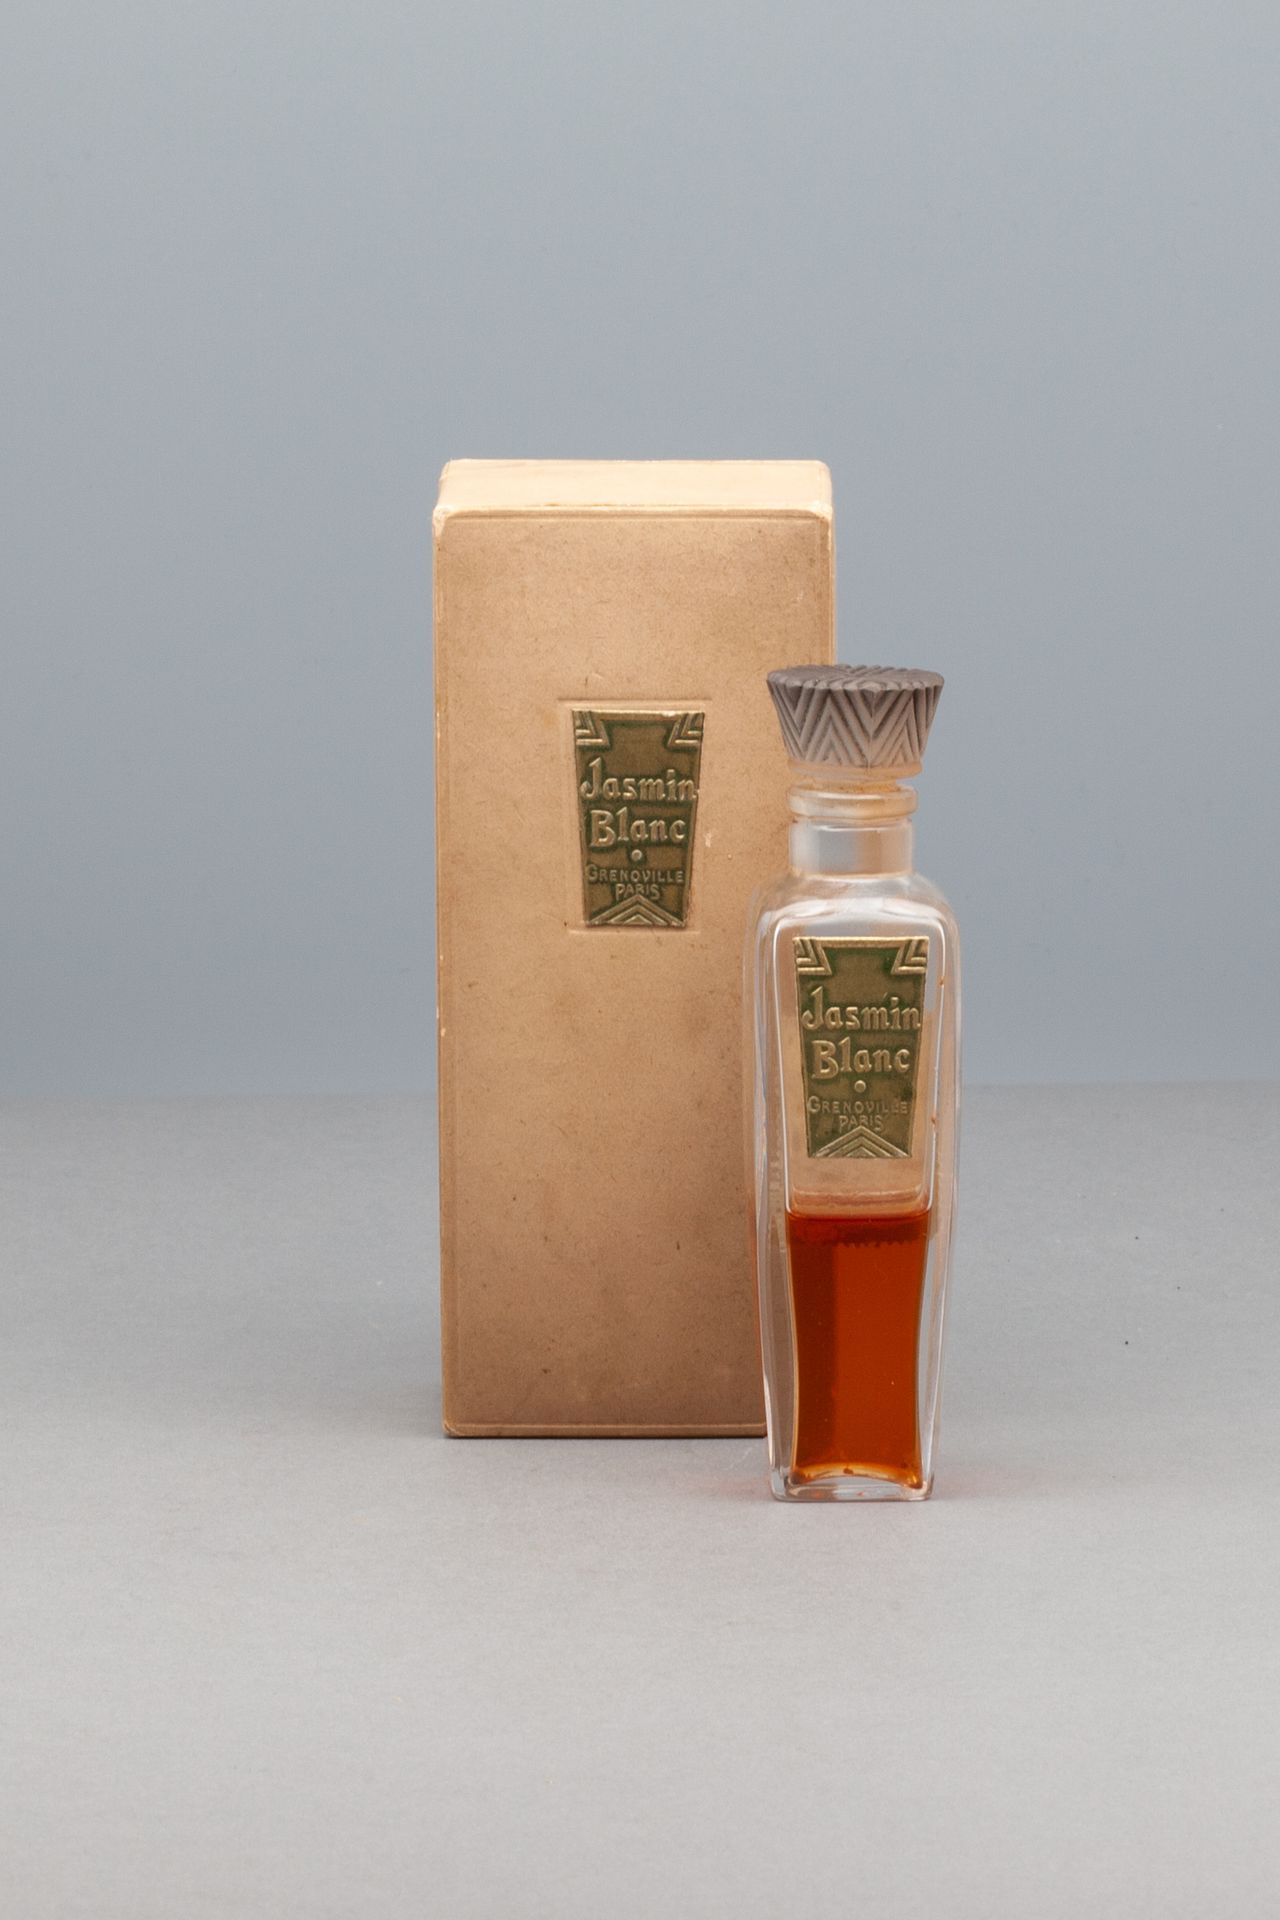 GRENOVILLE "JASMIN BLANC" Bottiglia di vetro con etichetta dorata. Tappo stilizz&hellip;